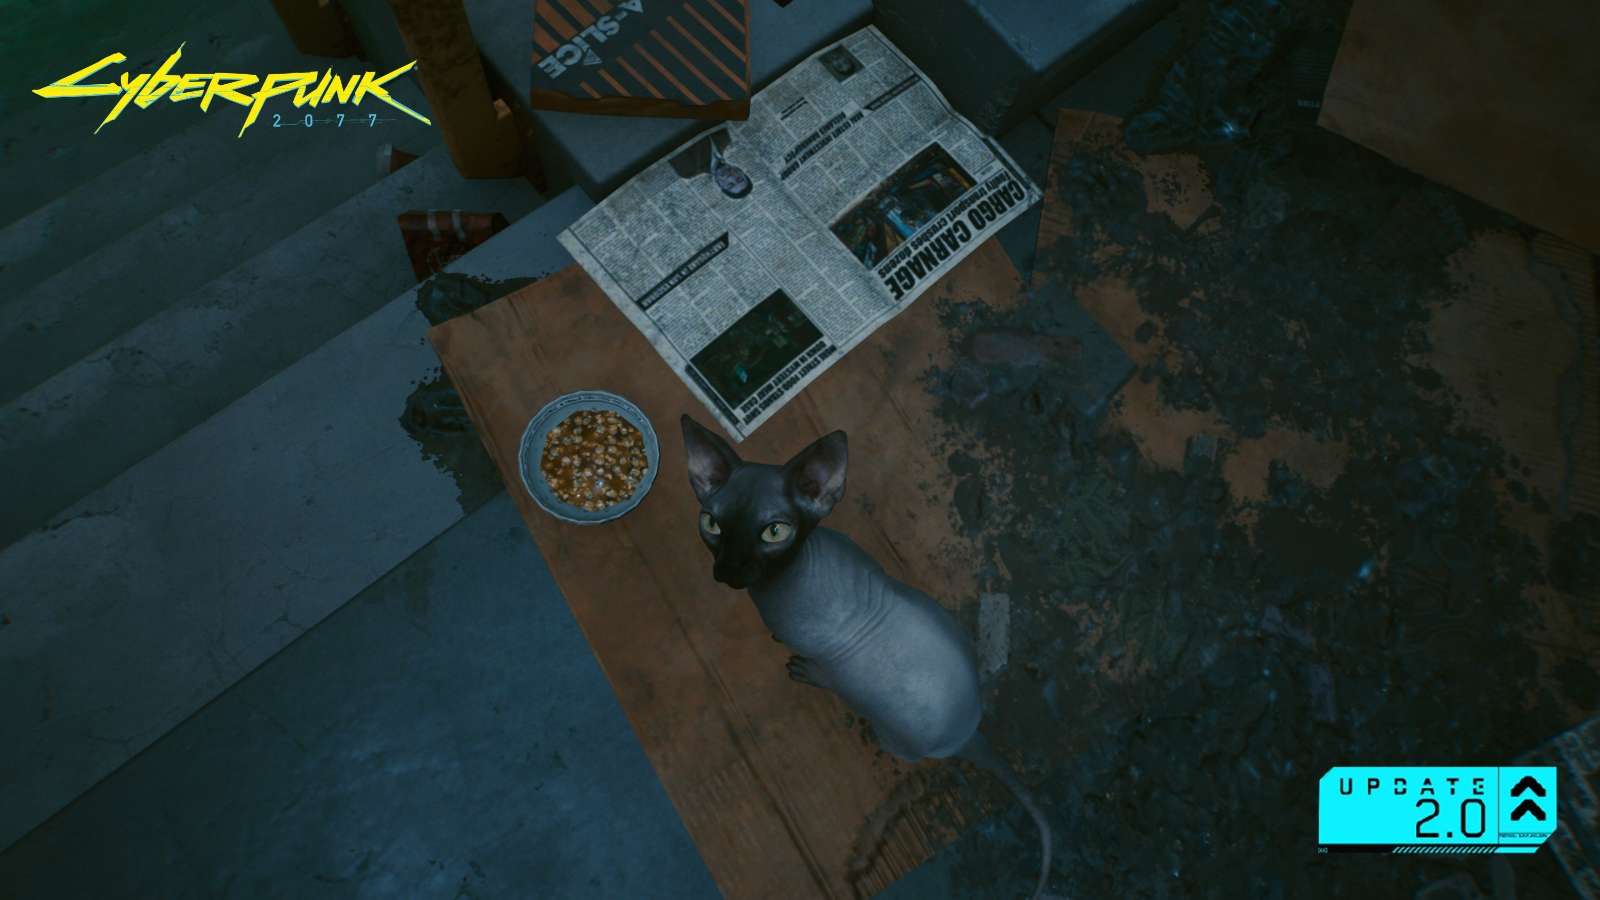 Brightman cat in Cyberpunk 2077